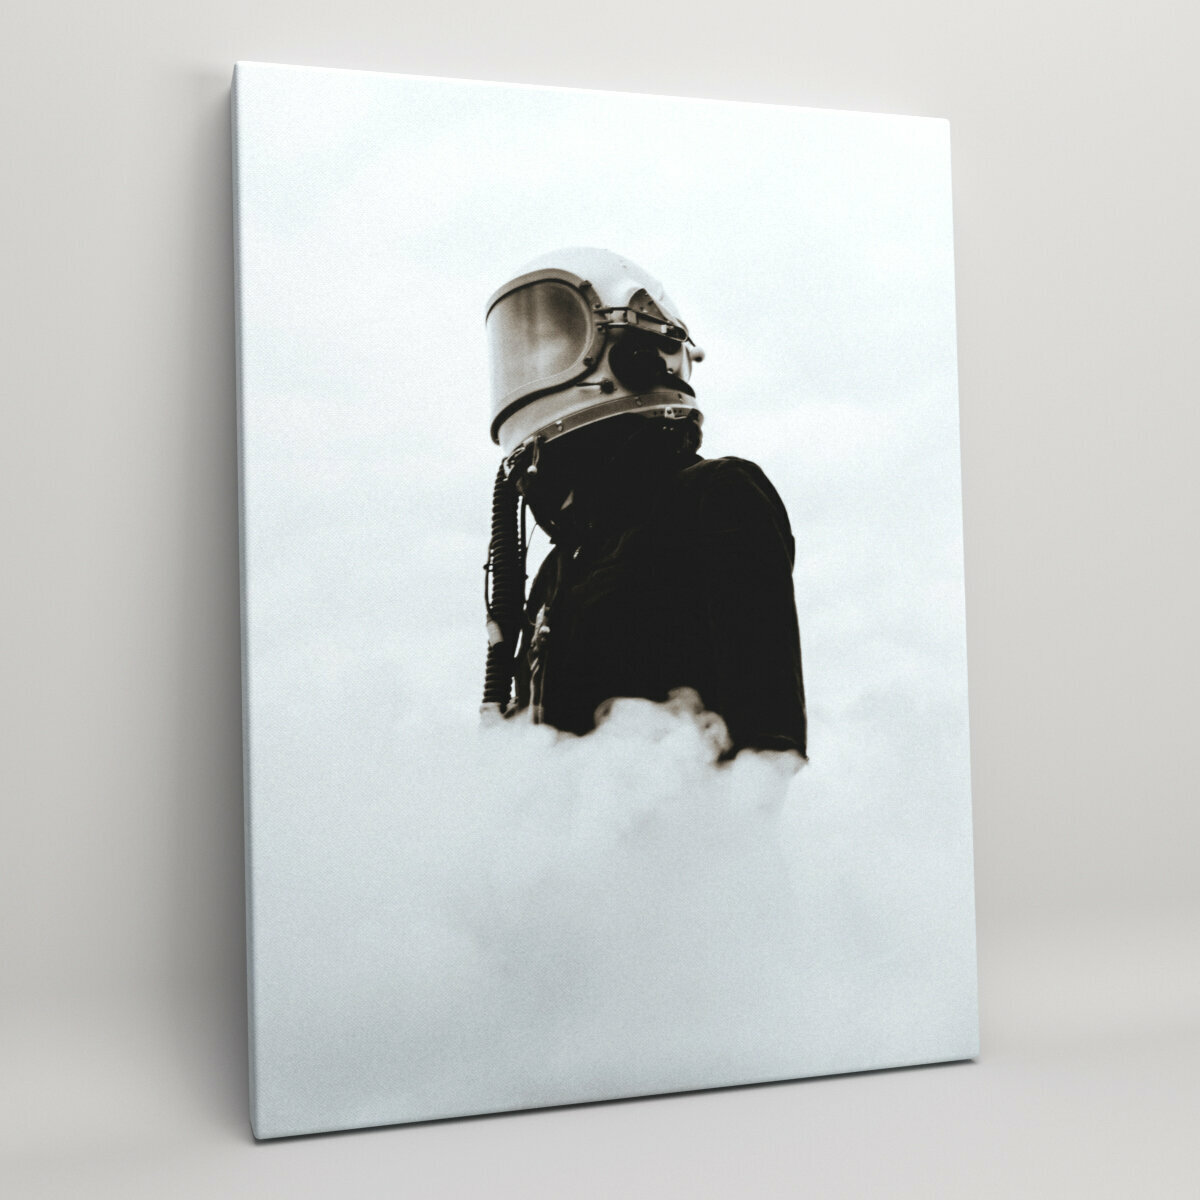 Картина на холсте (интерьерный постер) "Космонавт в дыму", с деревянным подрамником, размер 30x40 см